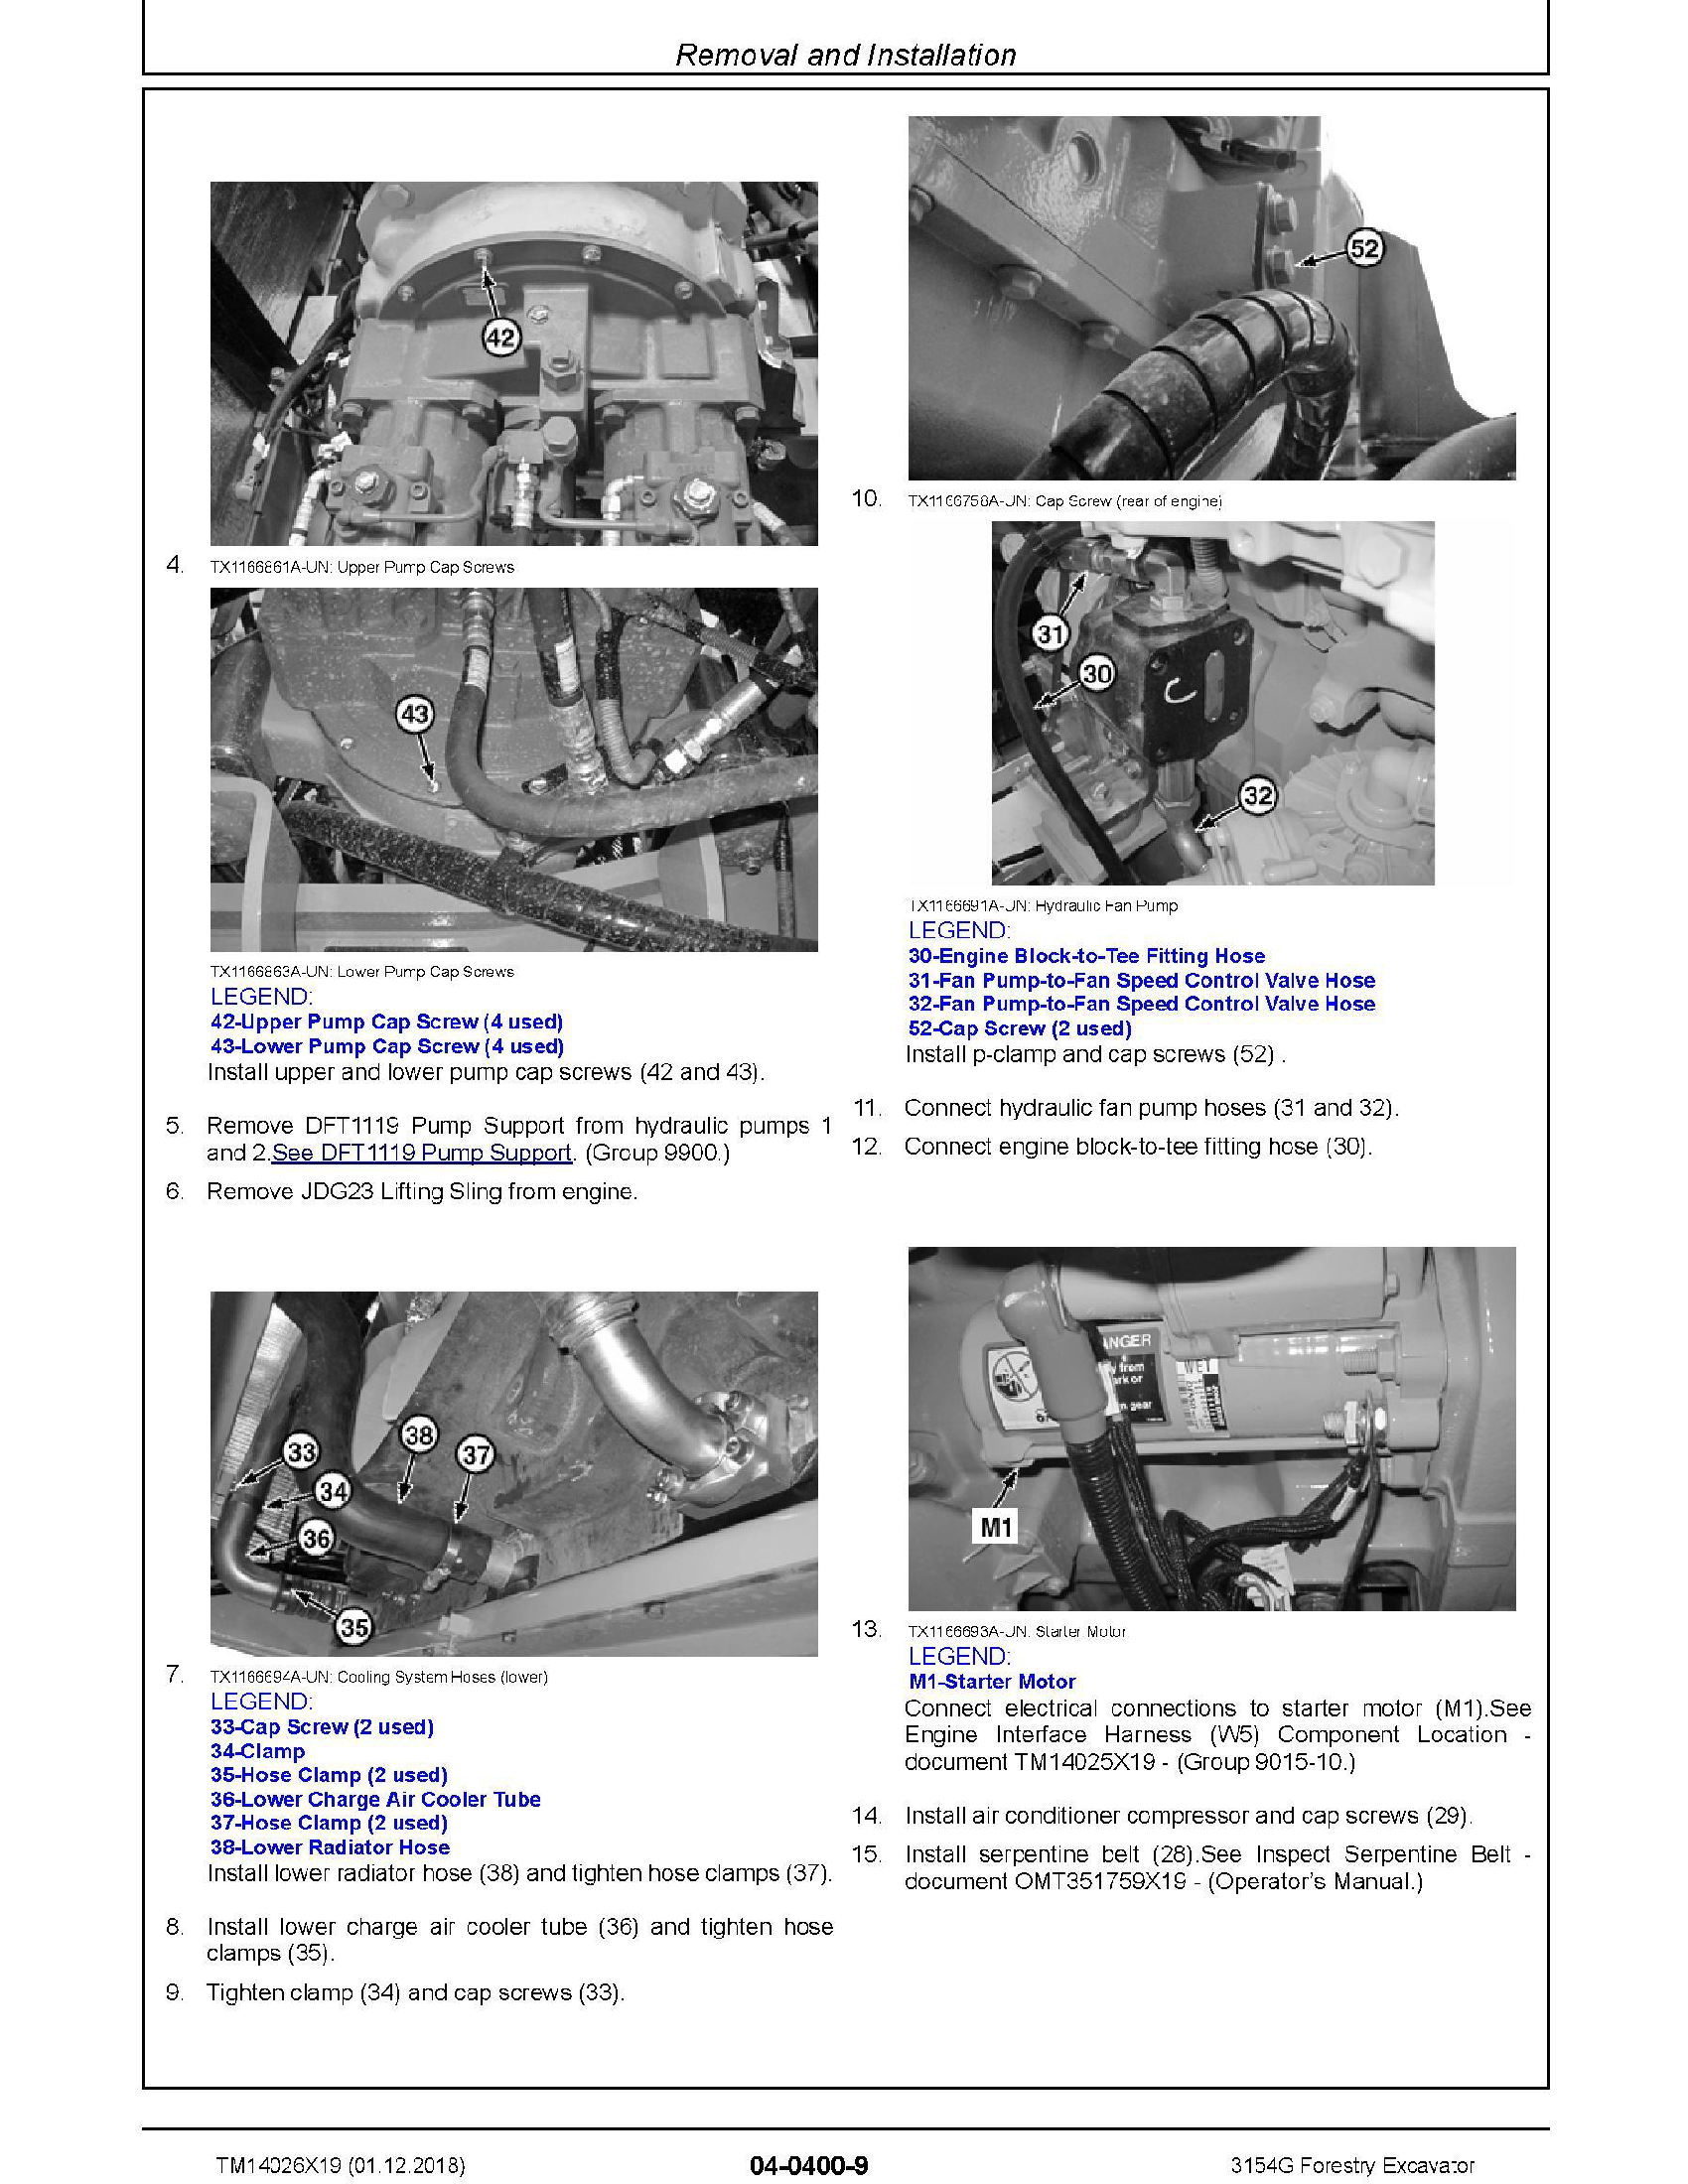 John Deere 644E manual pdf